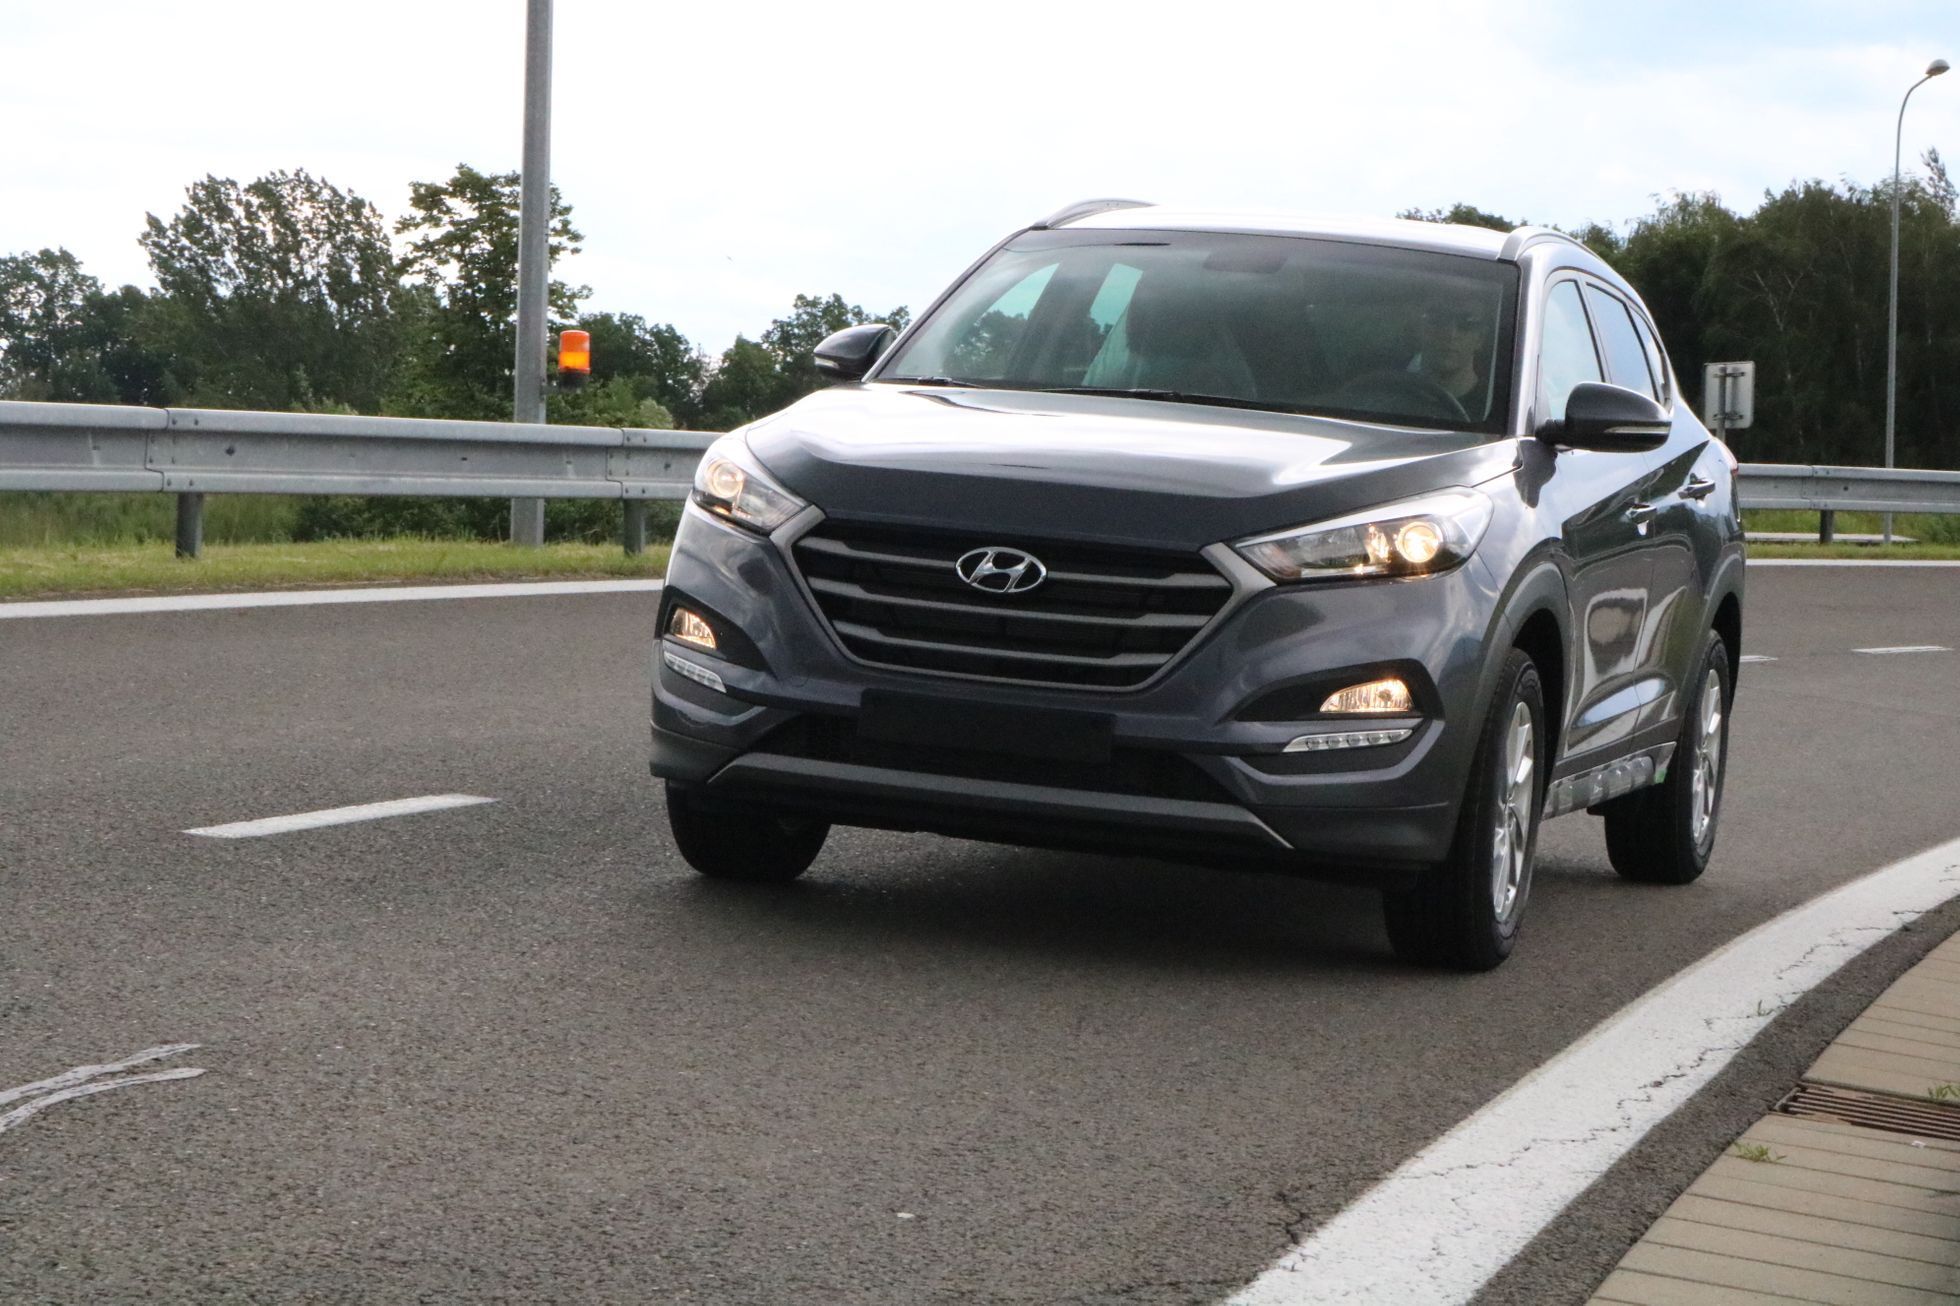 Testovací dráha Hyundai Nošovice - klopená zatáčka